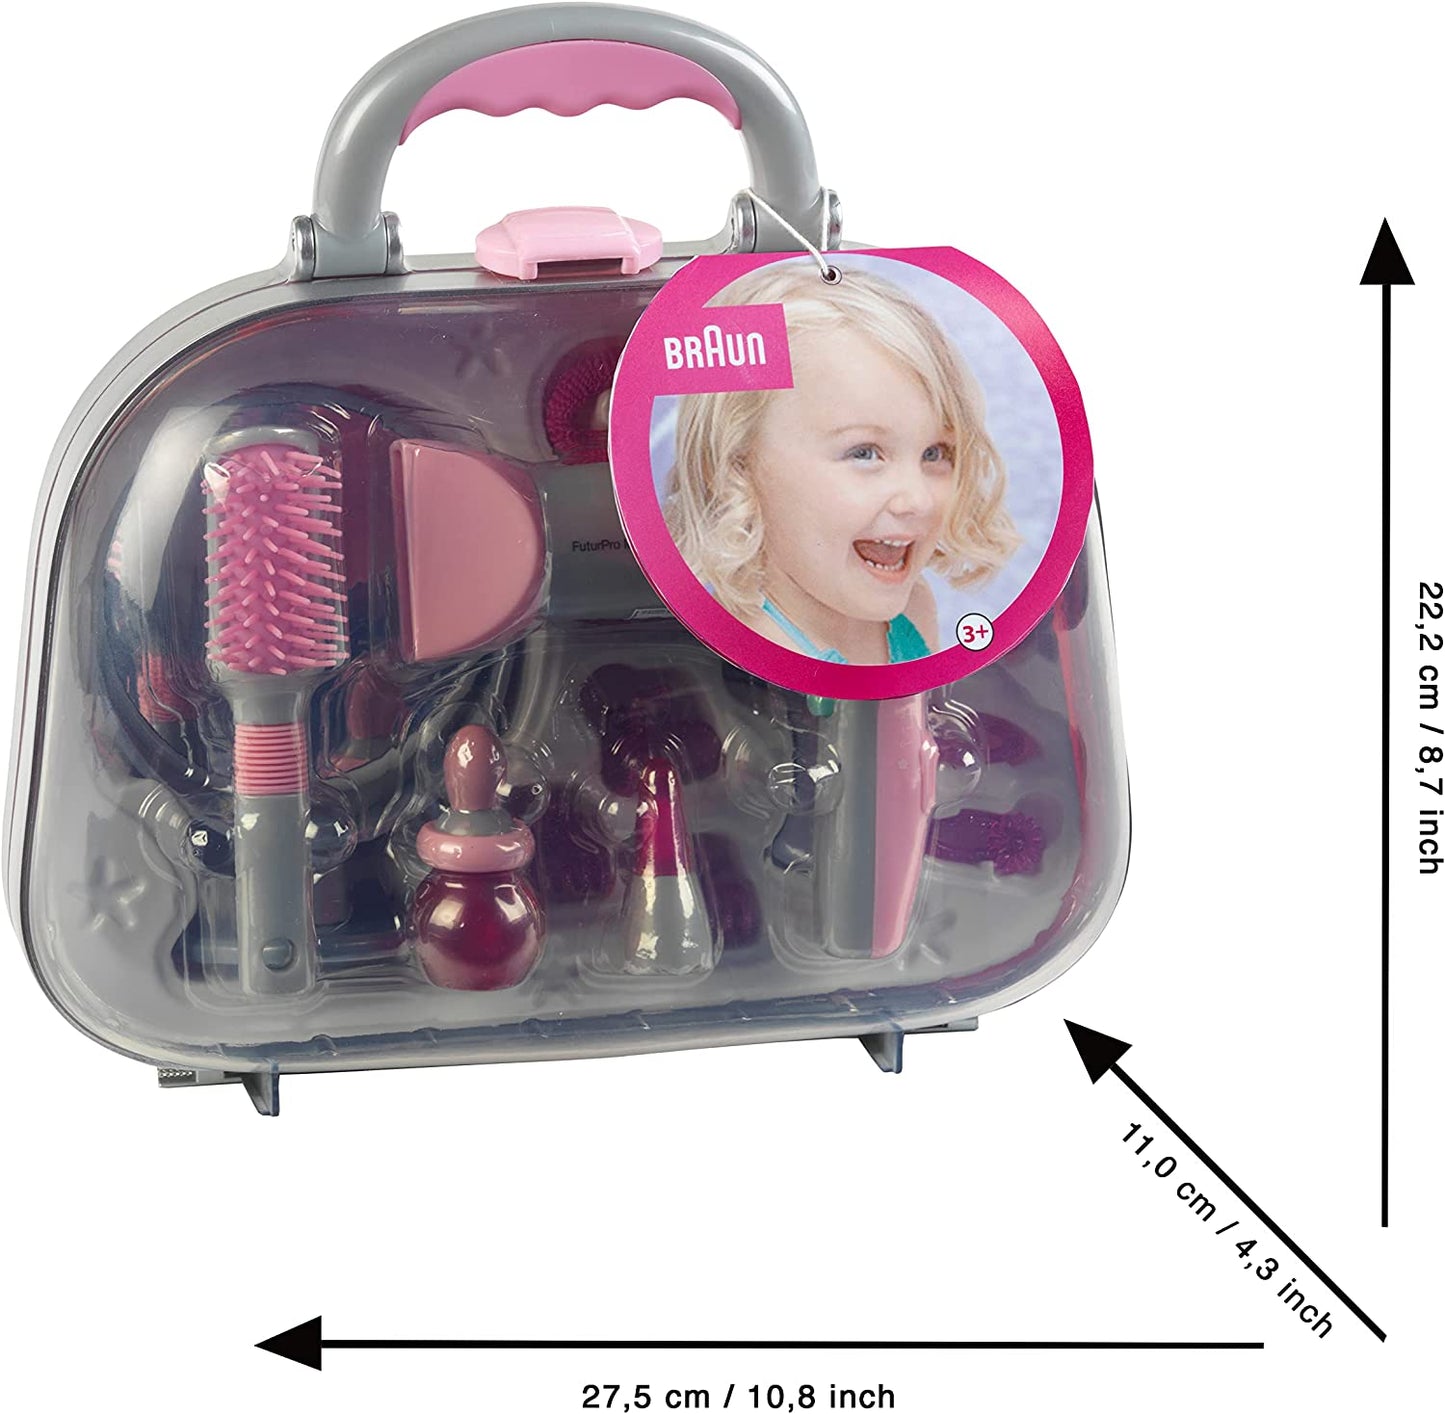 Toy Braun Hairstyling Case with Braun Hairdryer